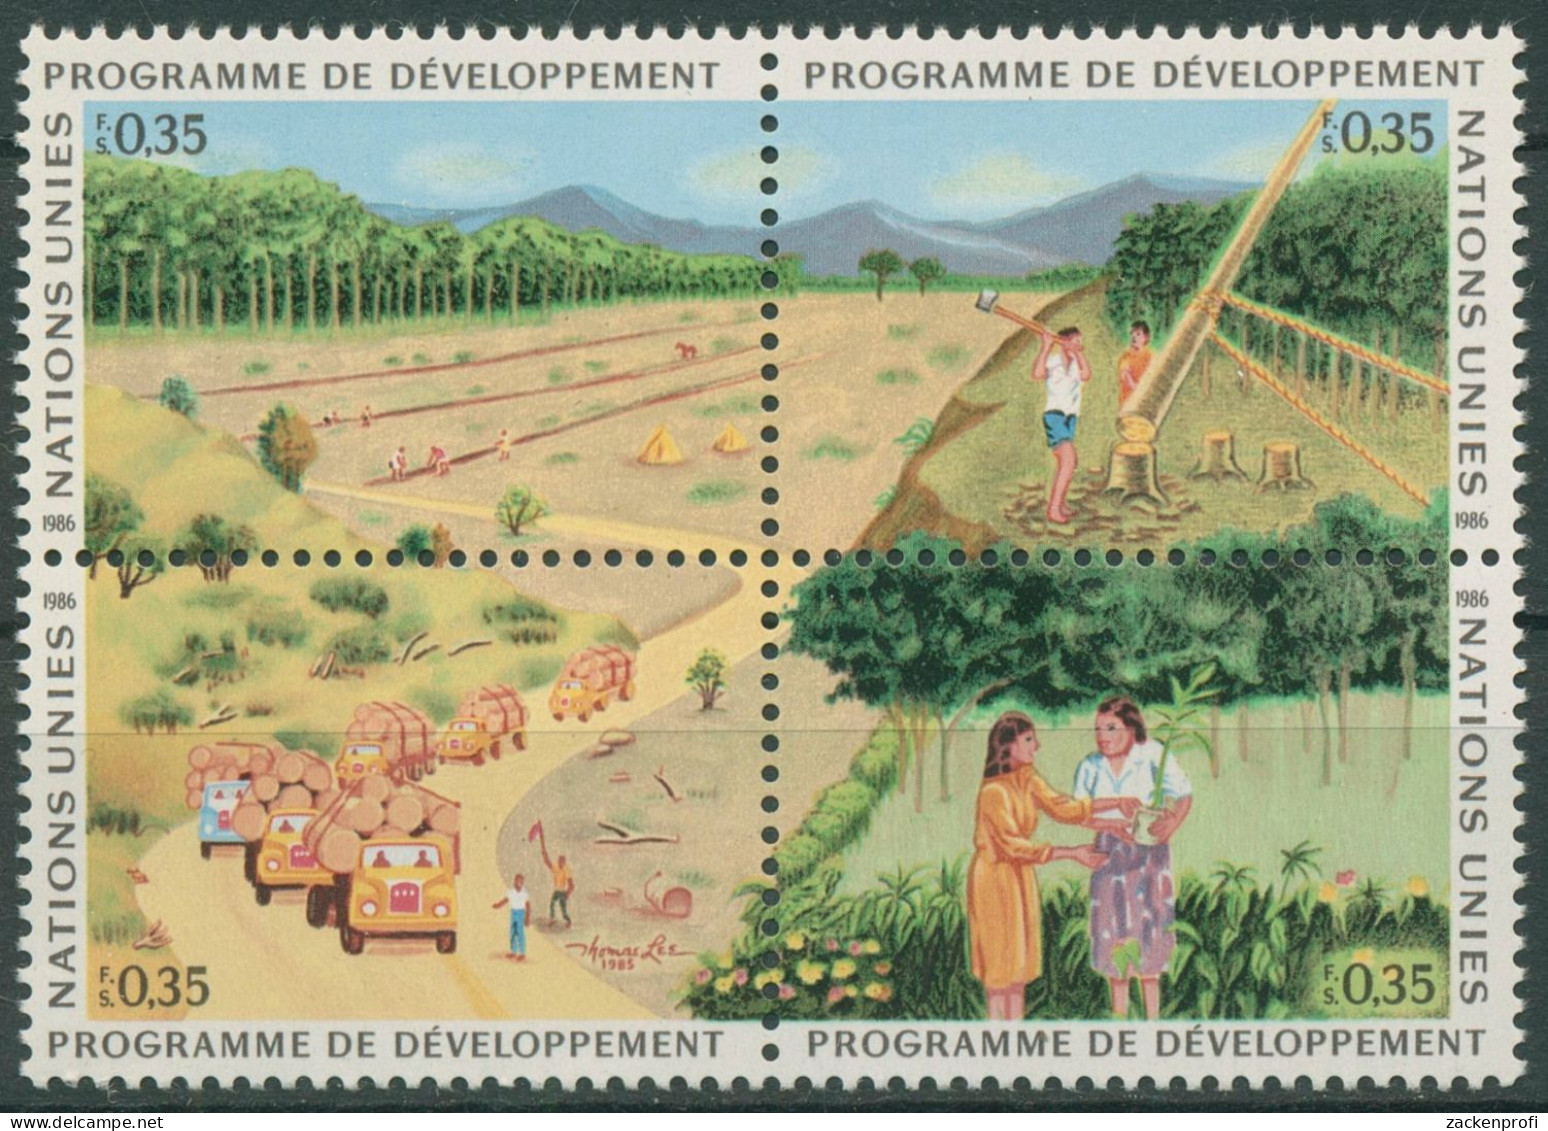 UNO Genf 1986 Entwicklungsprogramm Wald Aufforstung 138/41 ZD Postfrisch - Neufs